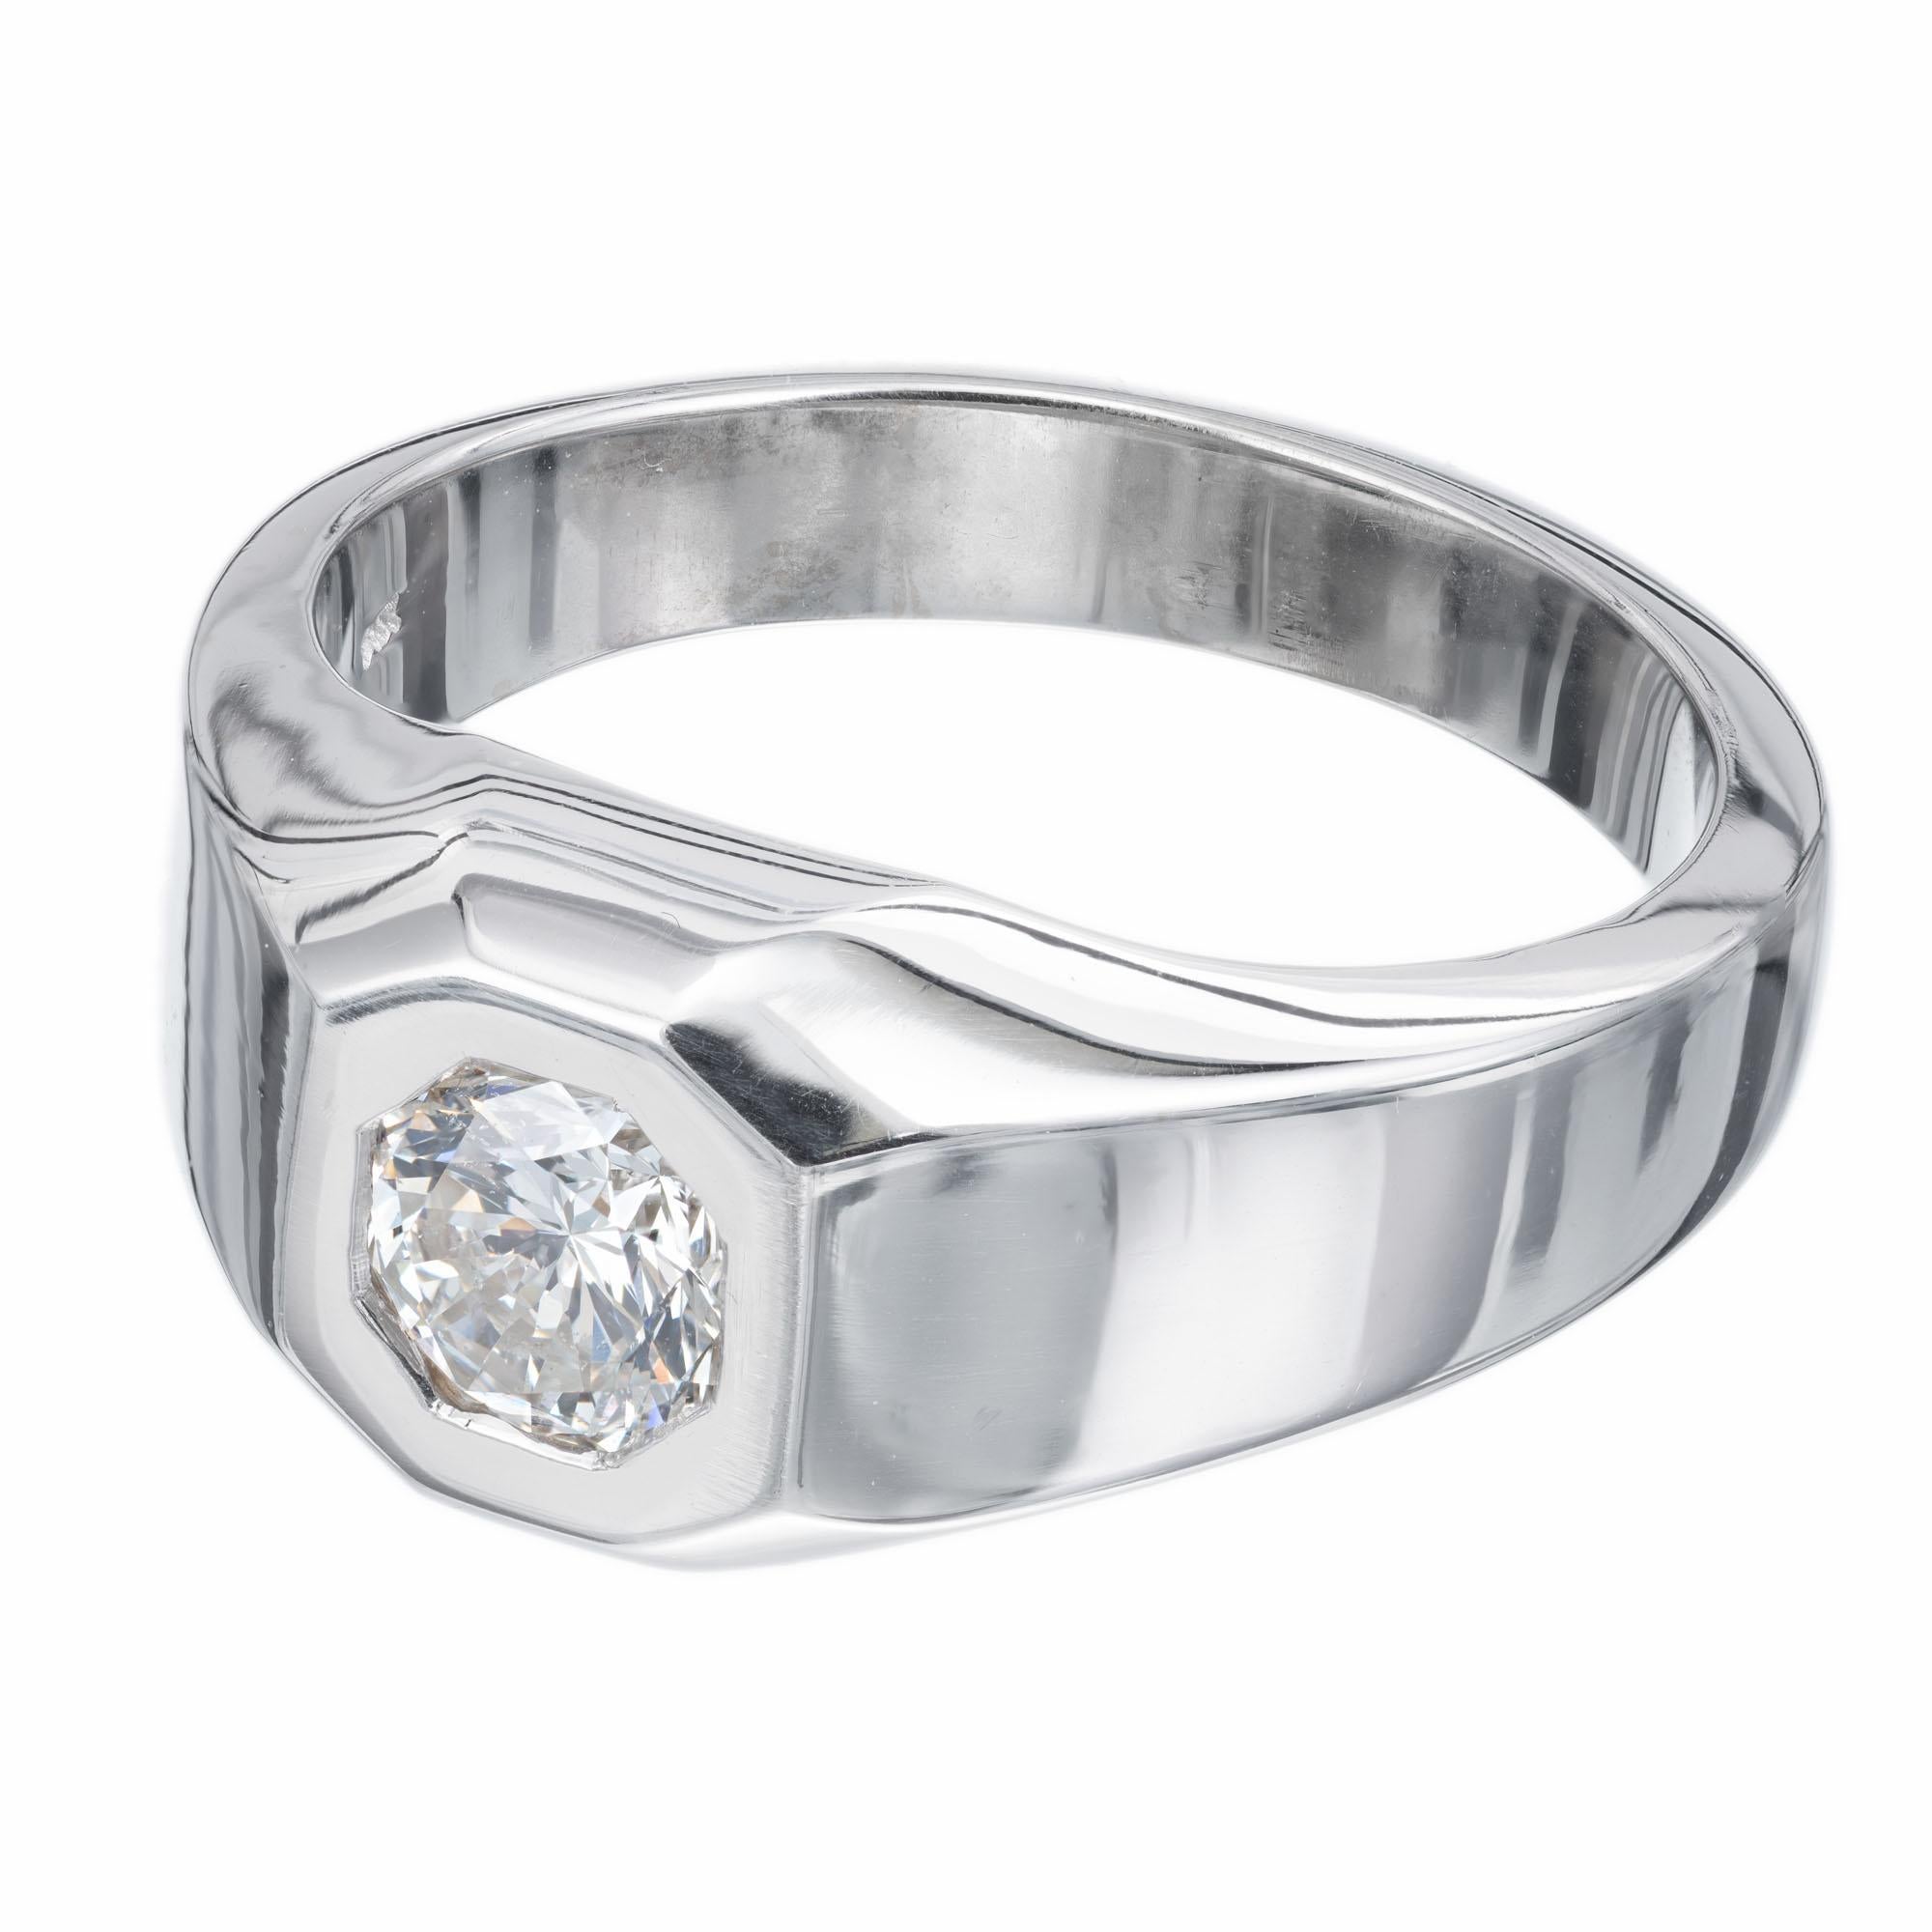 1/70th of a carat diamond ring